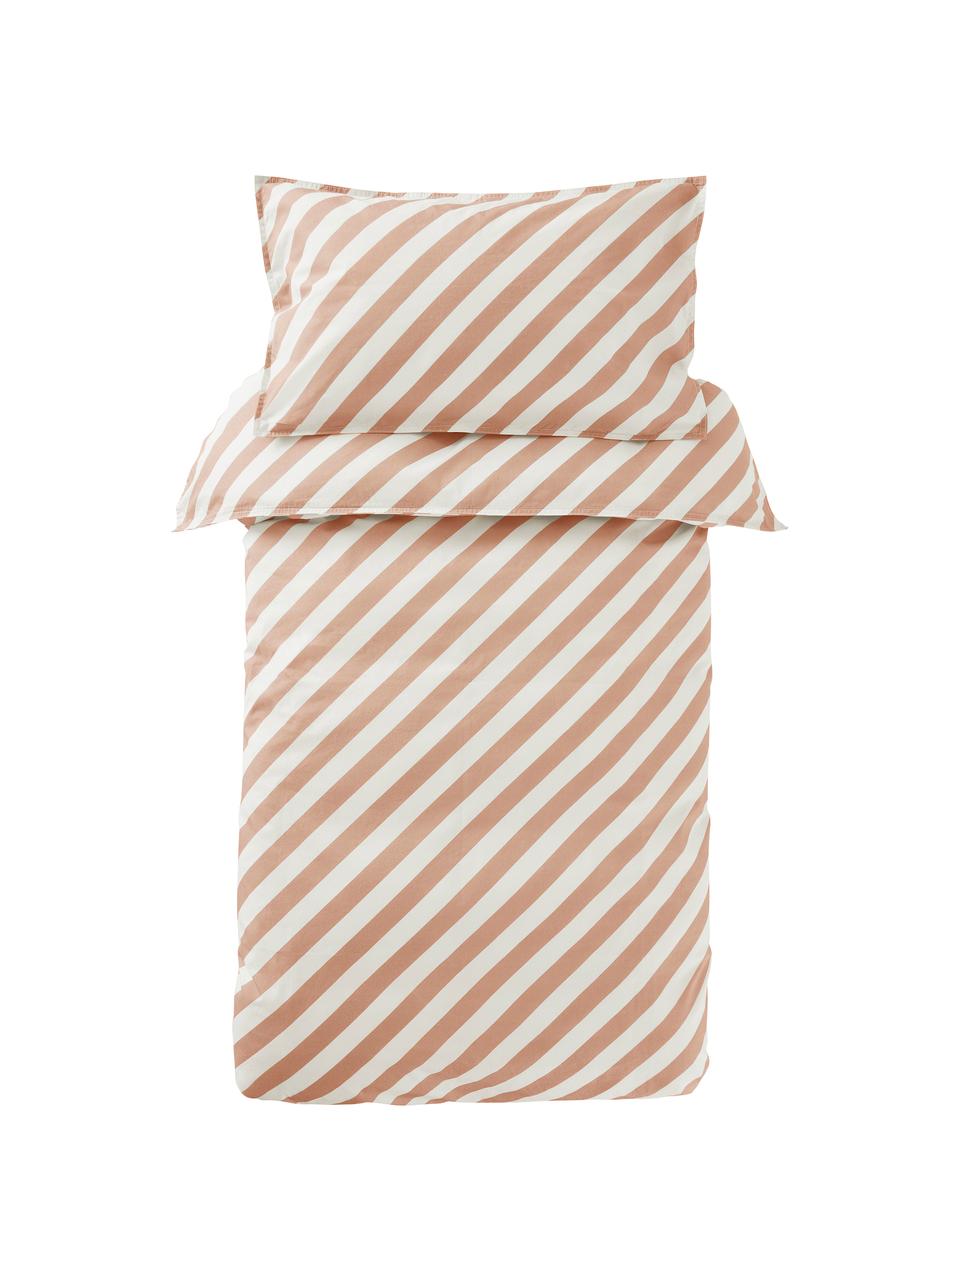 Biancheria da letto a righe in cotone percalle rosa/bianco Franny, Tessuto: percalle, Rosa, bianco, 100 x 130 cm + 1 federa 55 x 35 cm